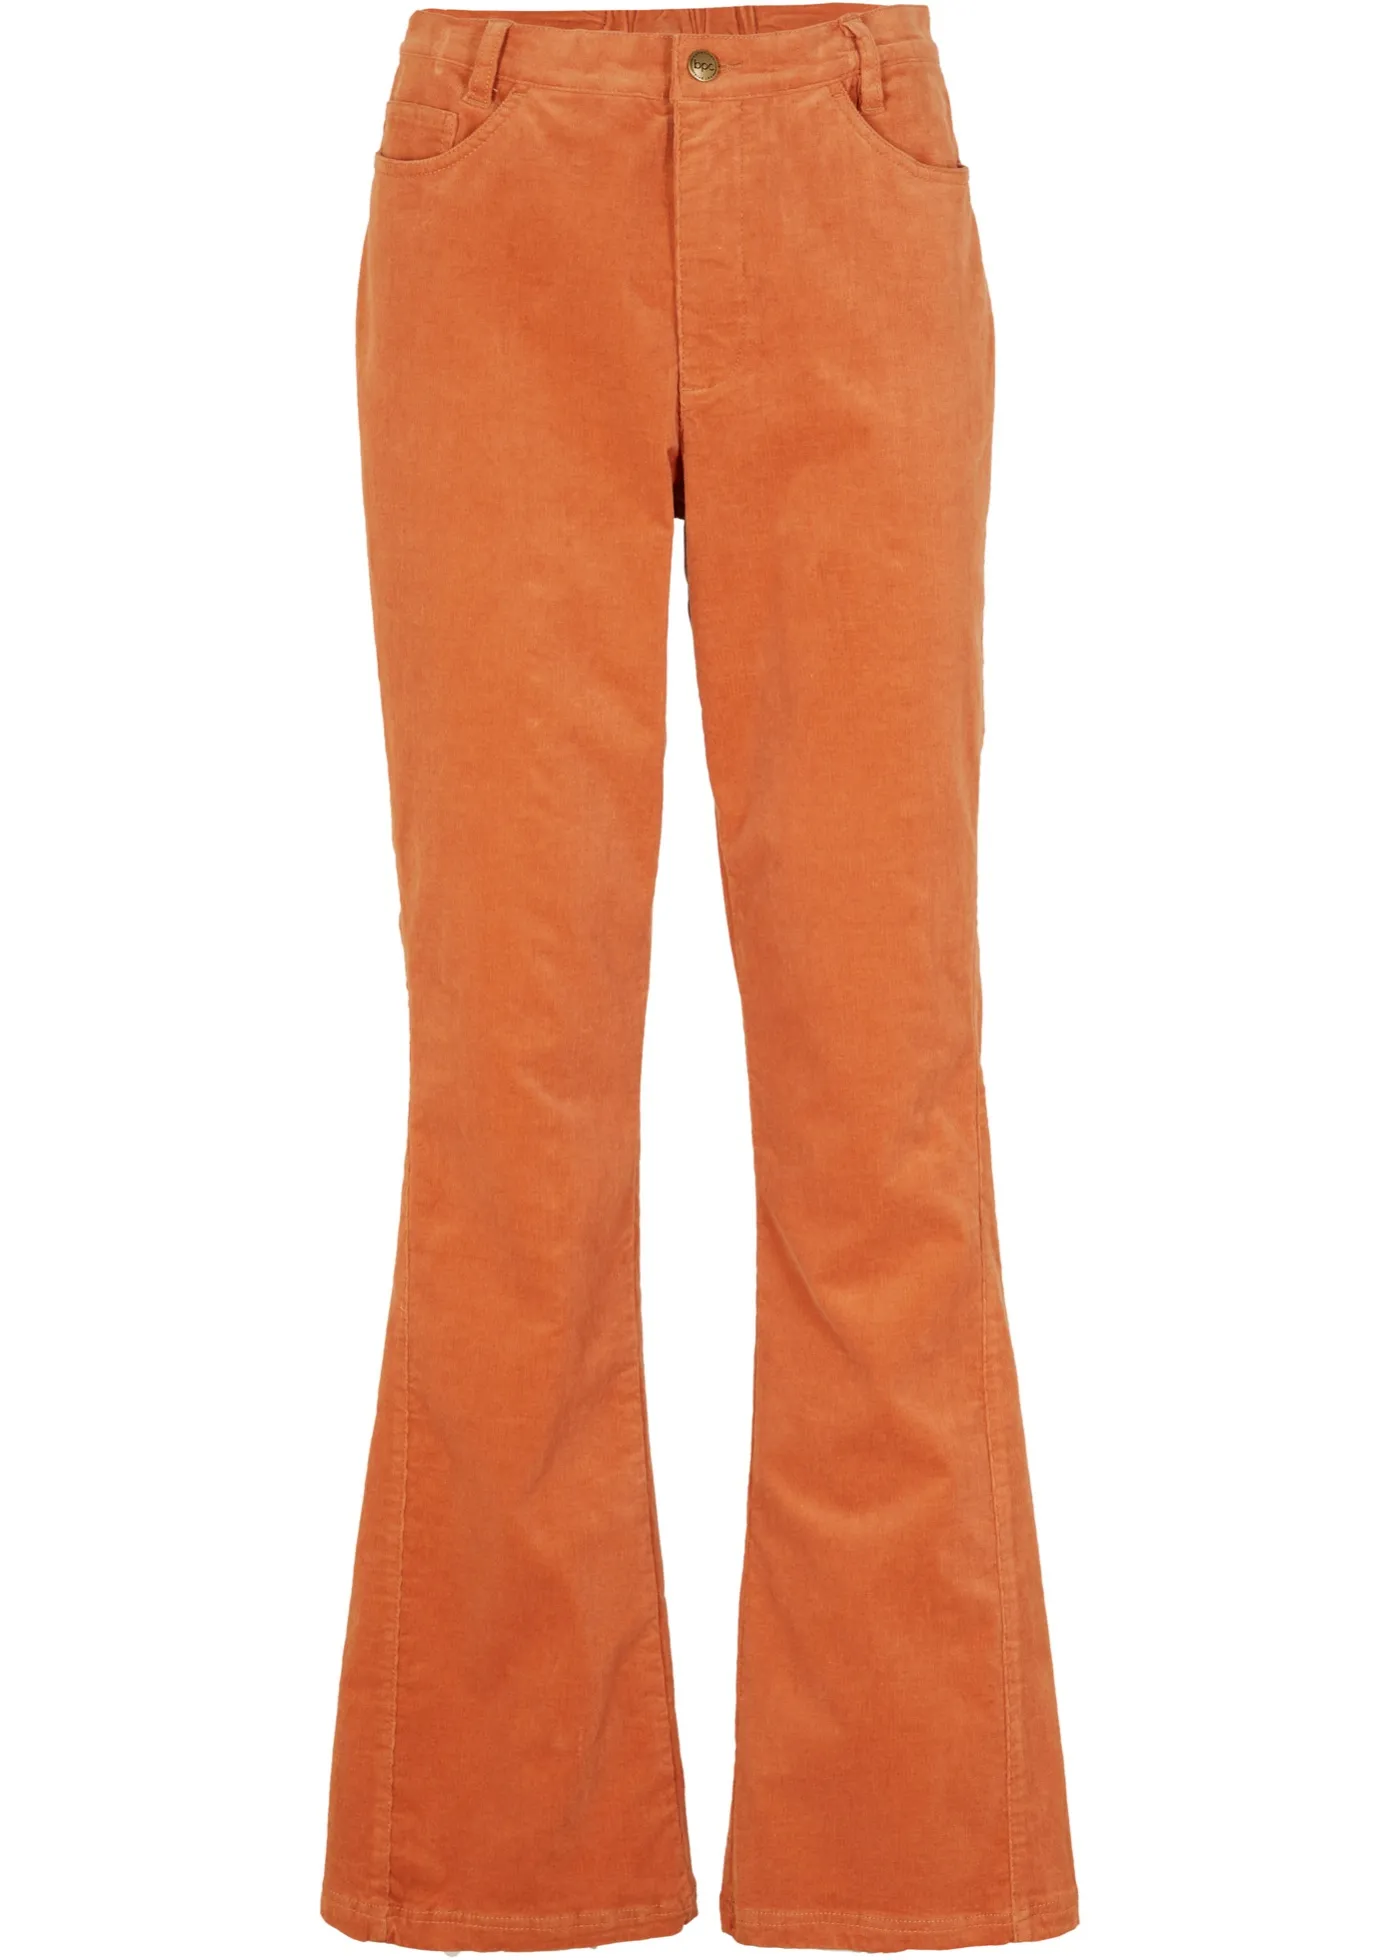 Pantaloni a zampa in velluto elasticizzato con cinta comoda (Arancione) - bpc bonprix collection